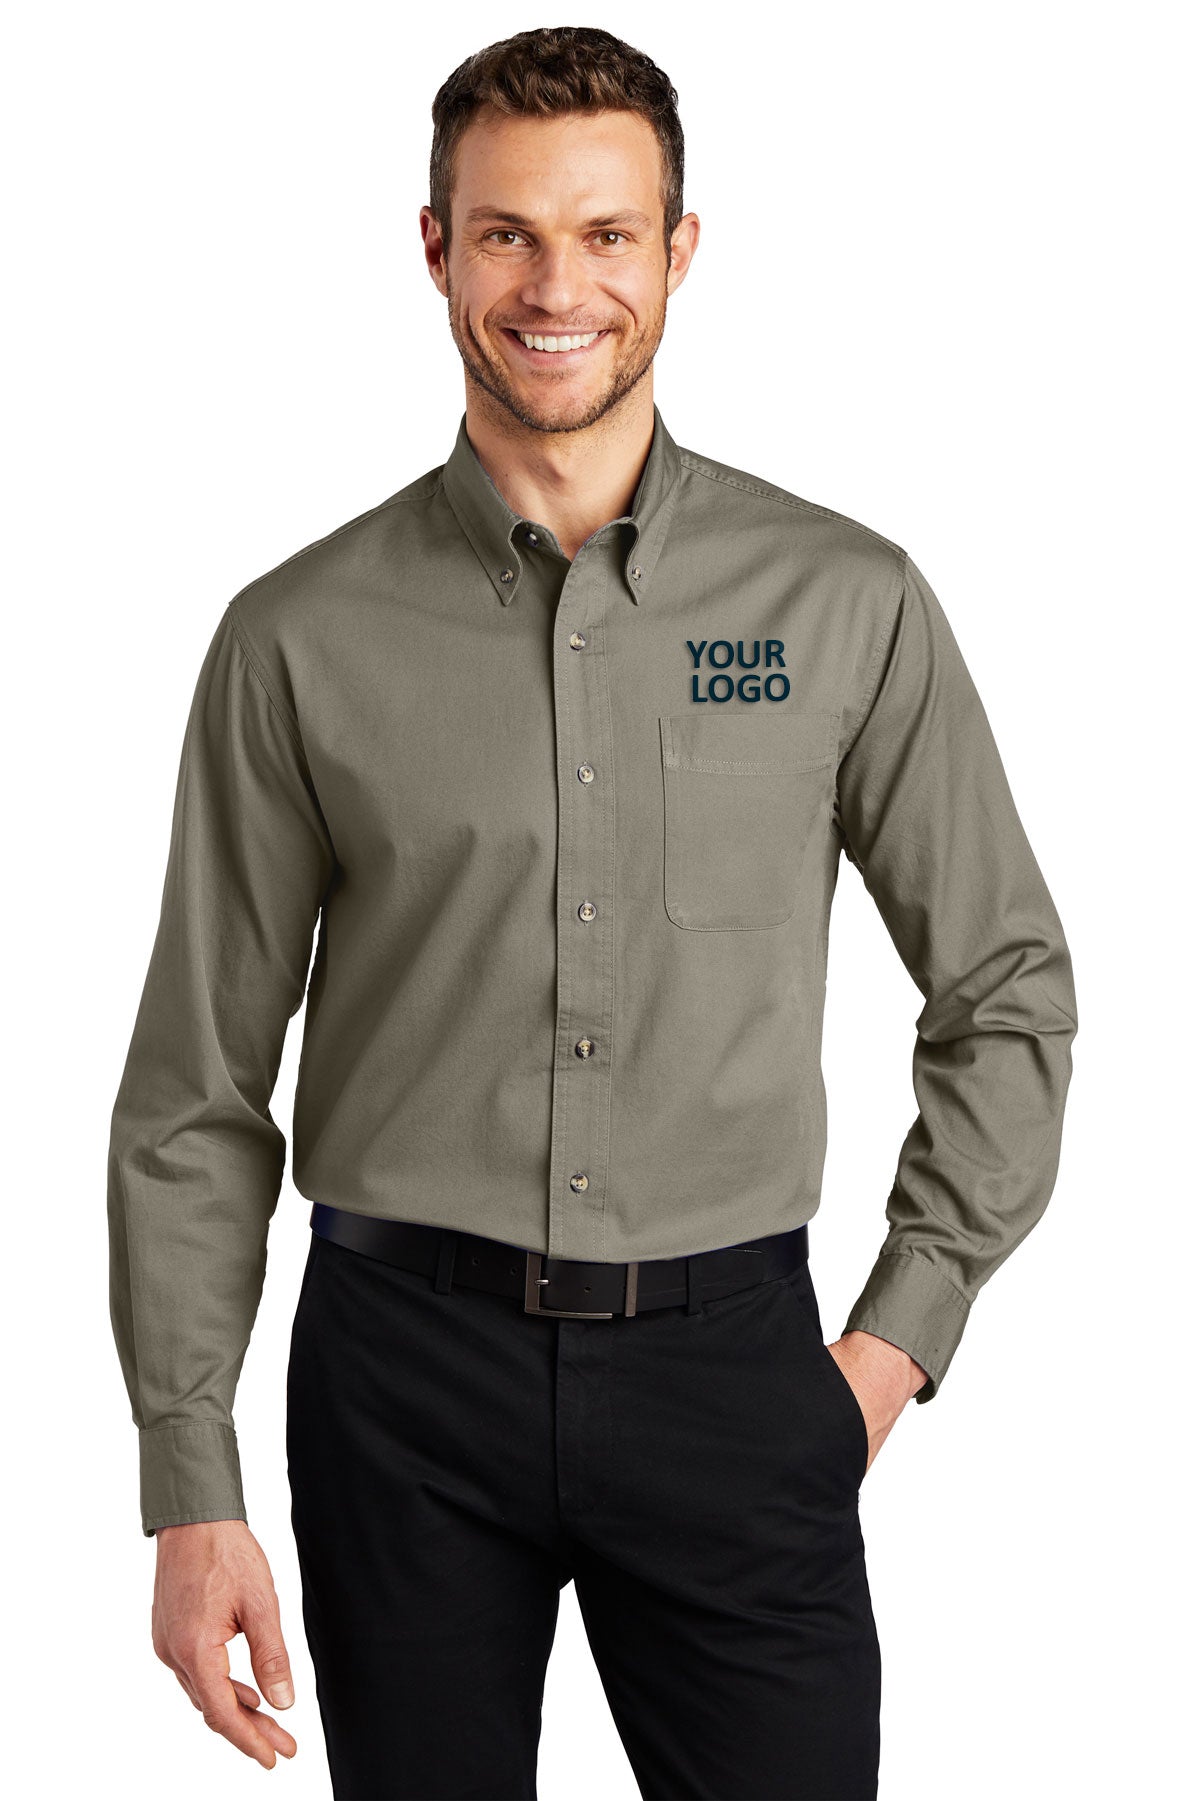 Port Authority Khaki TLS600T work shirts with logo